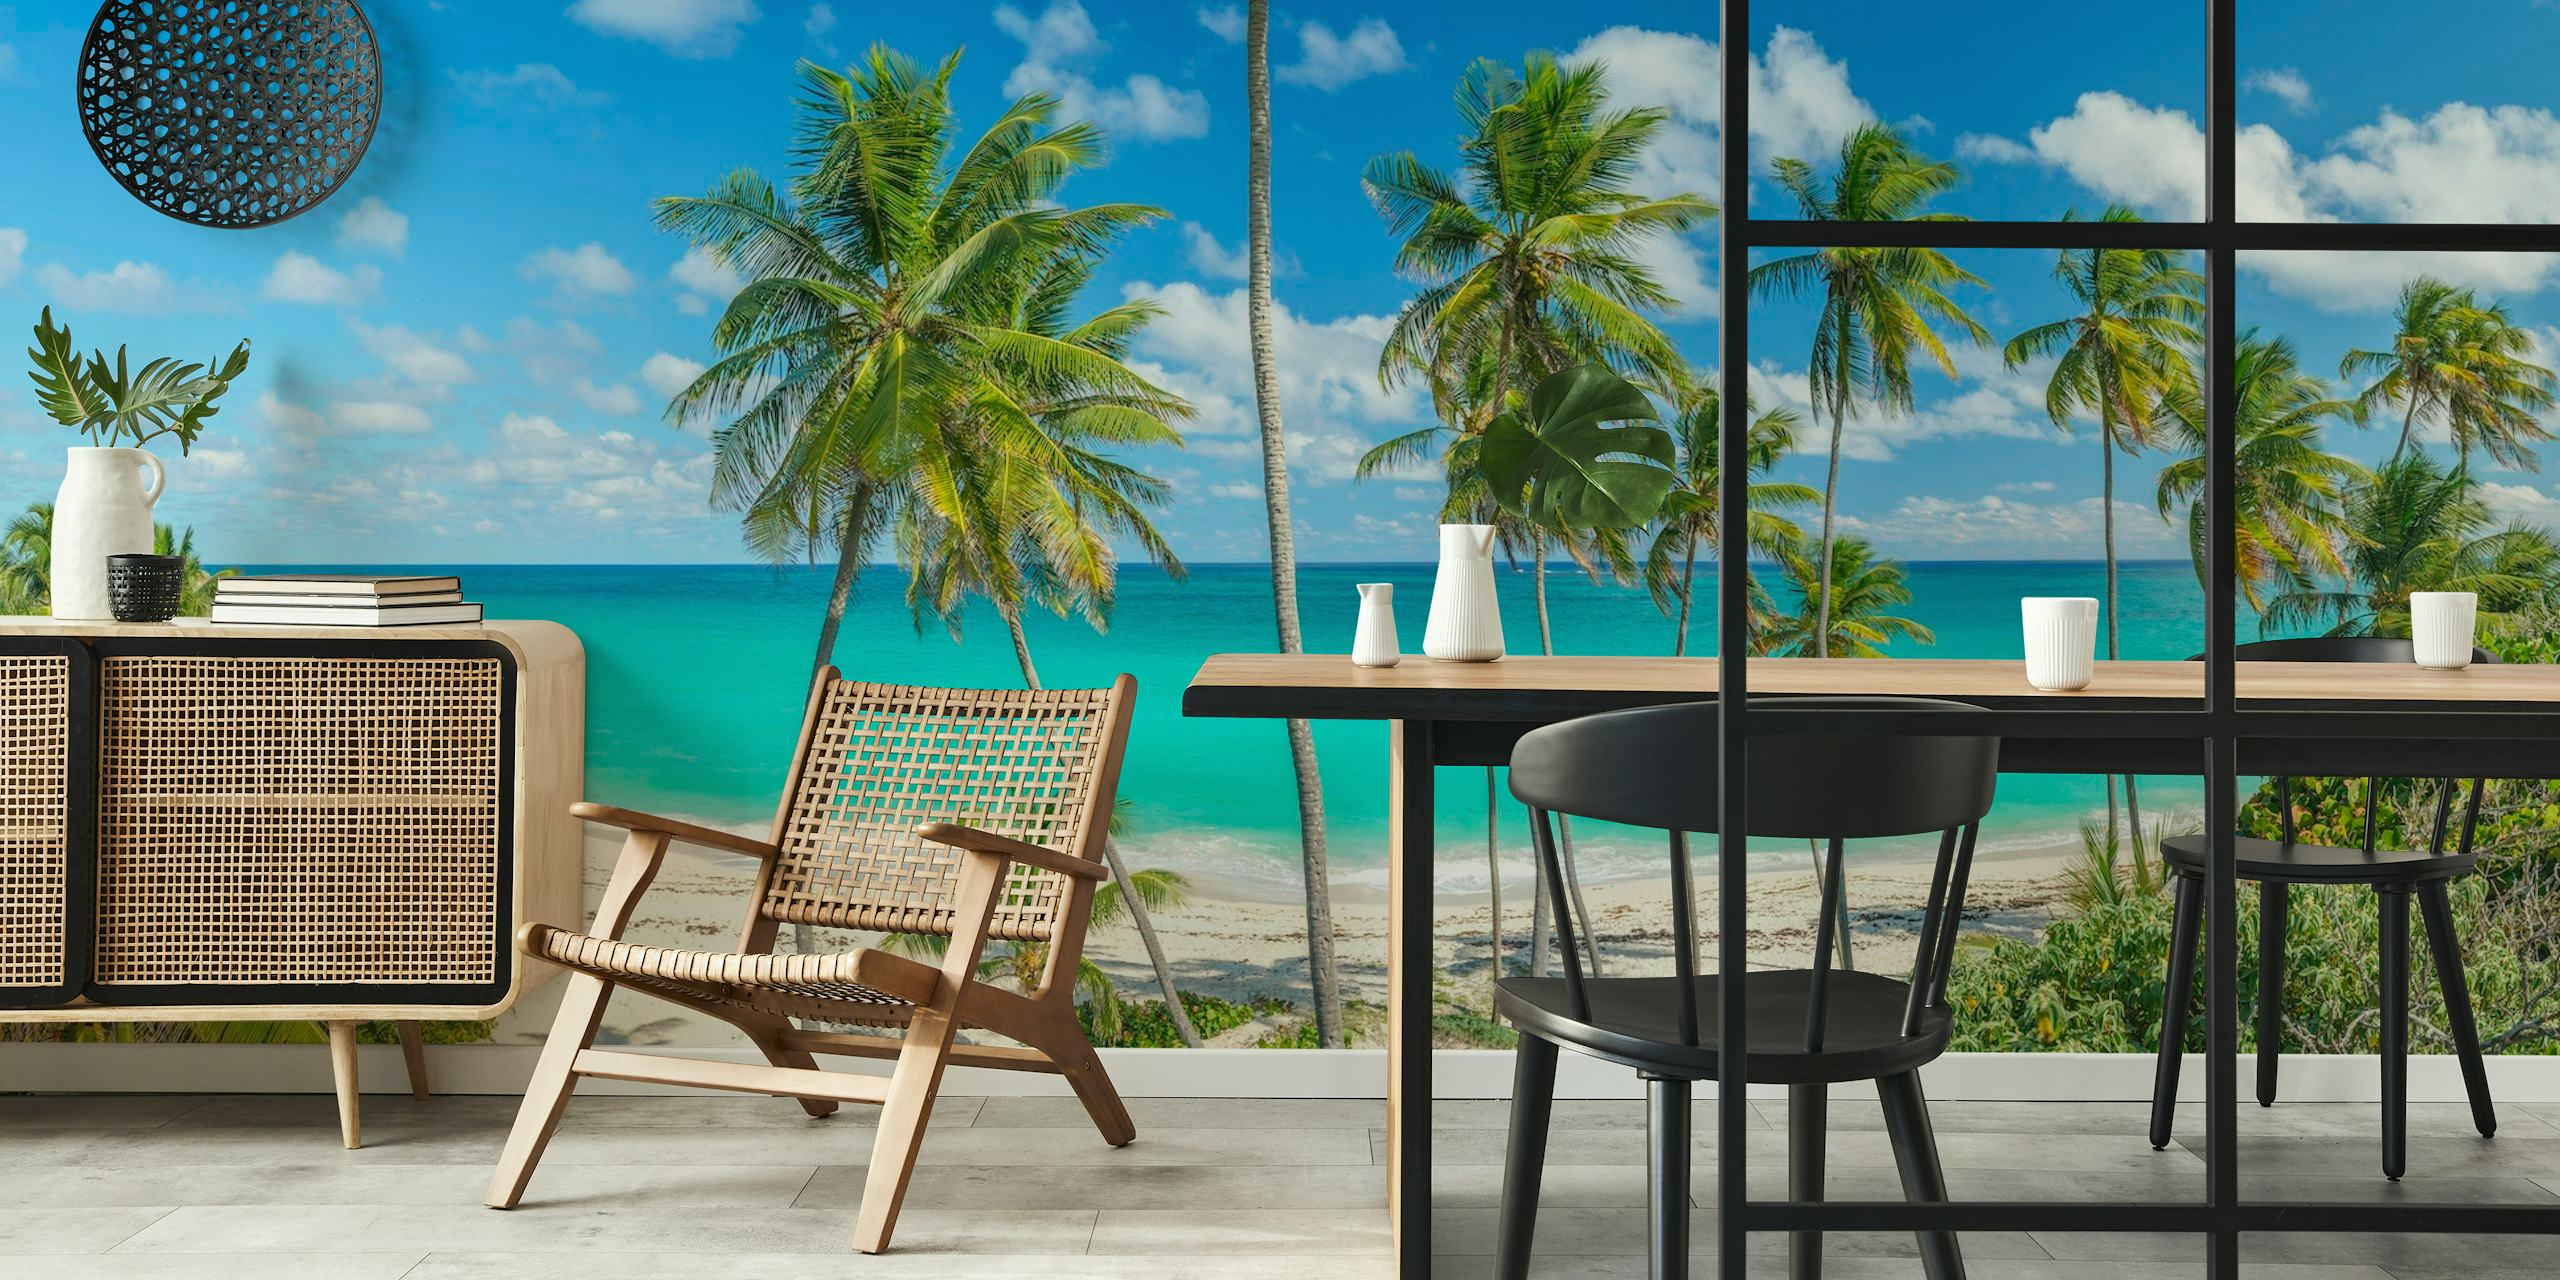 Fototapeta tropické pláže s palmami a průzračně modrými vodami